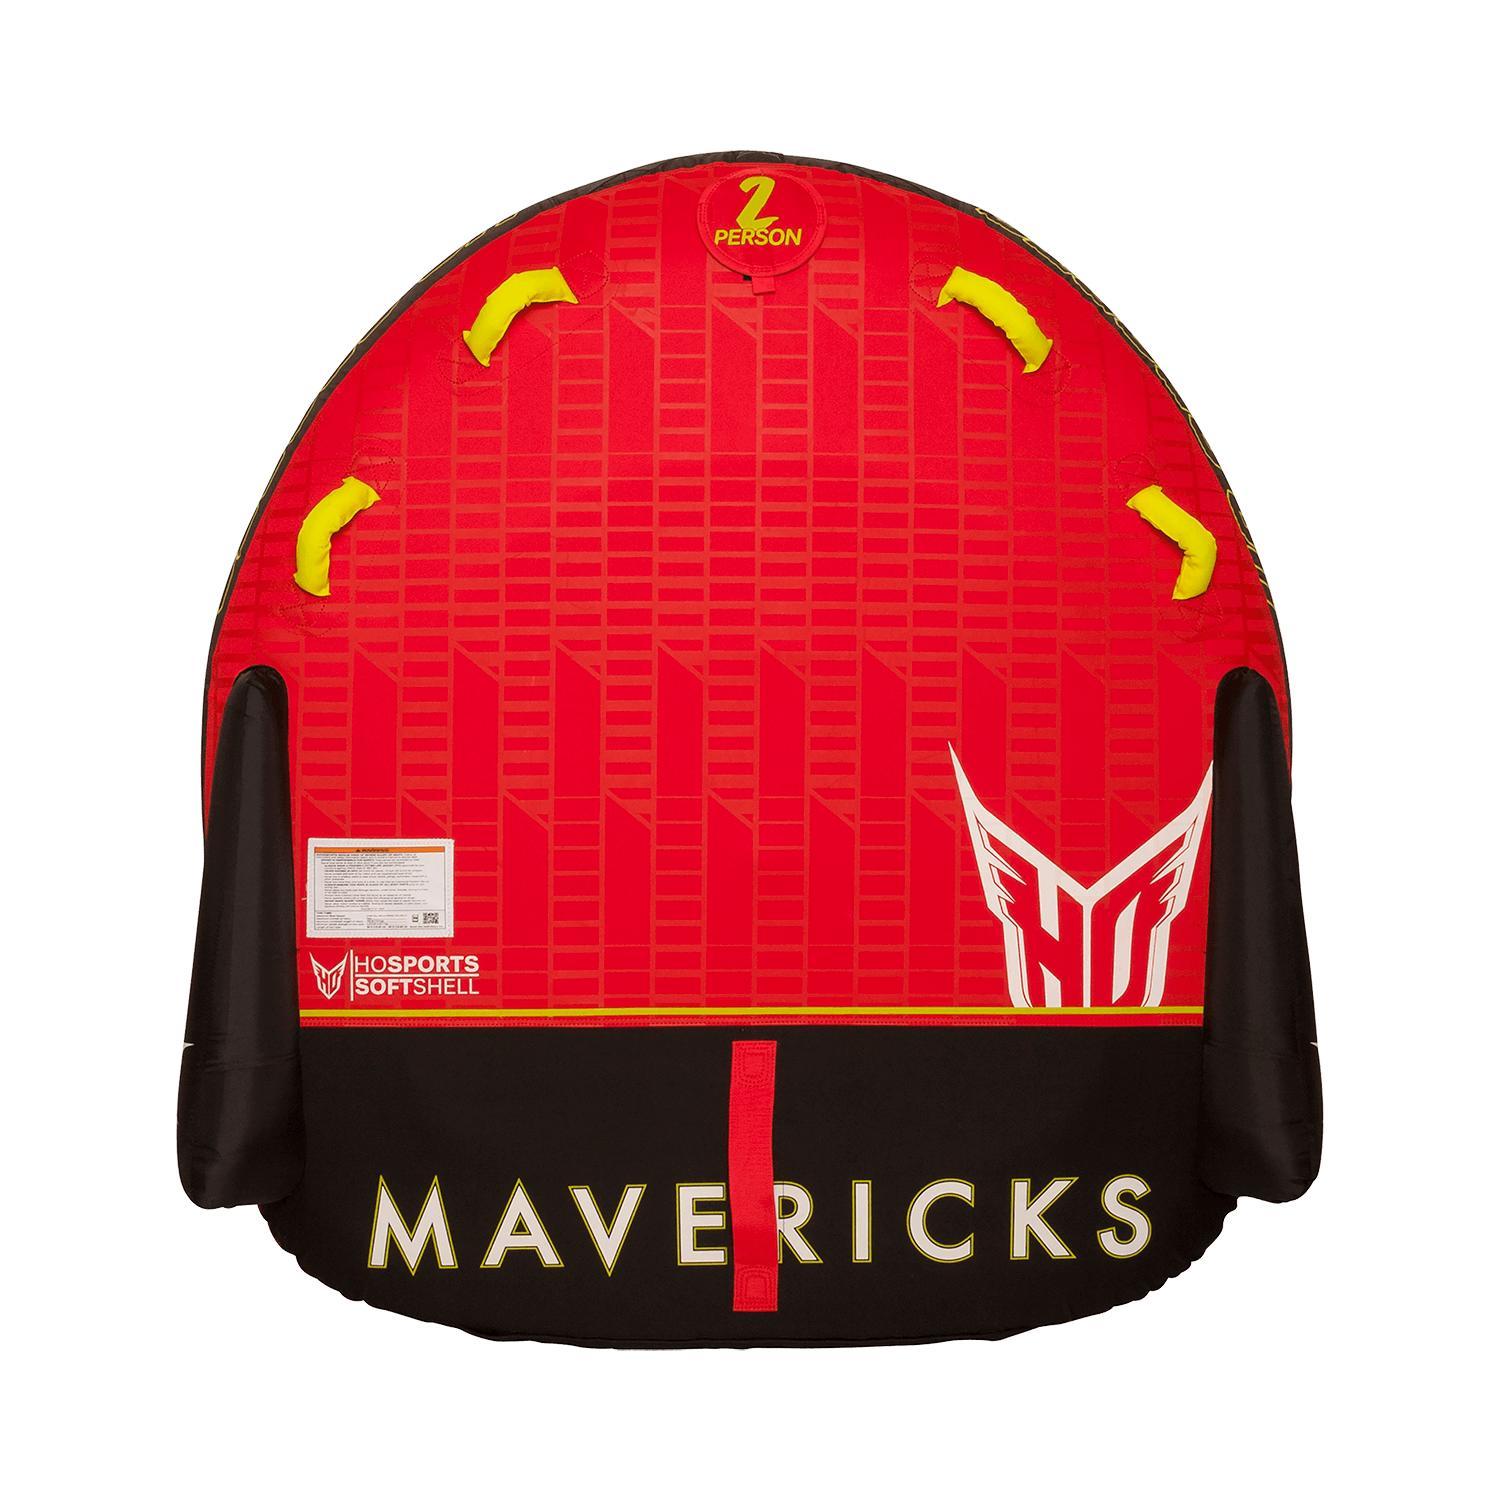  Mavericks 2 Tube